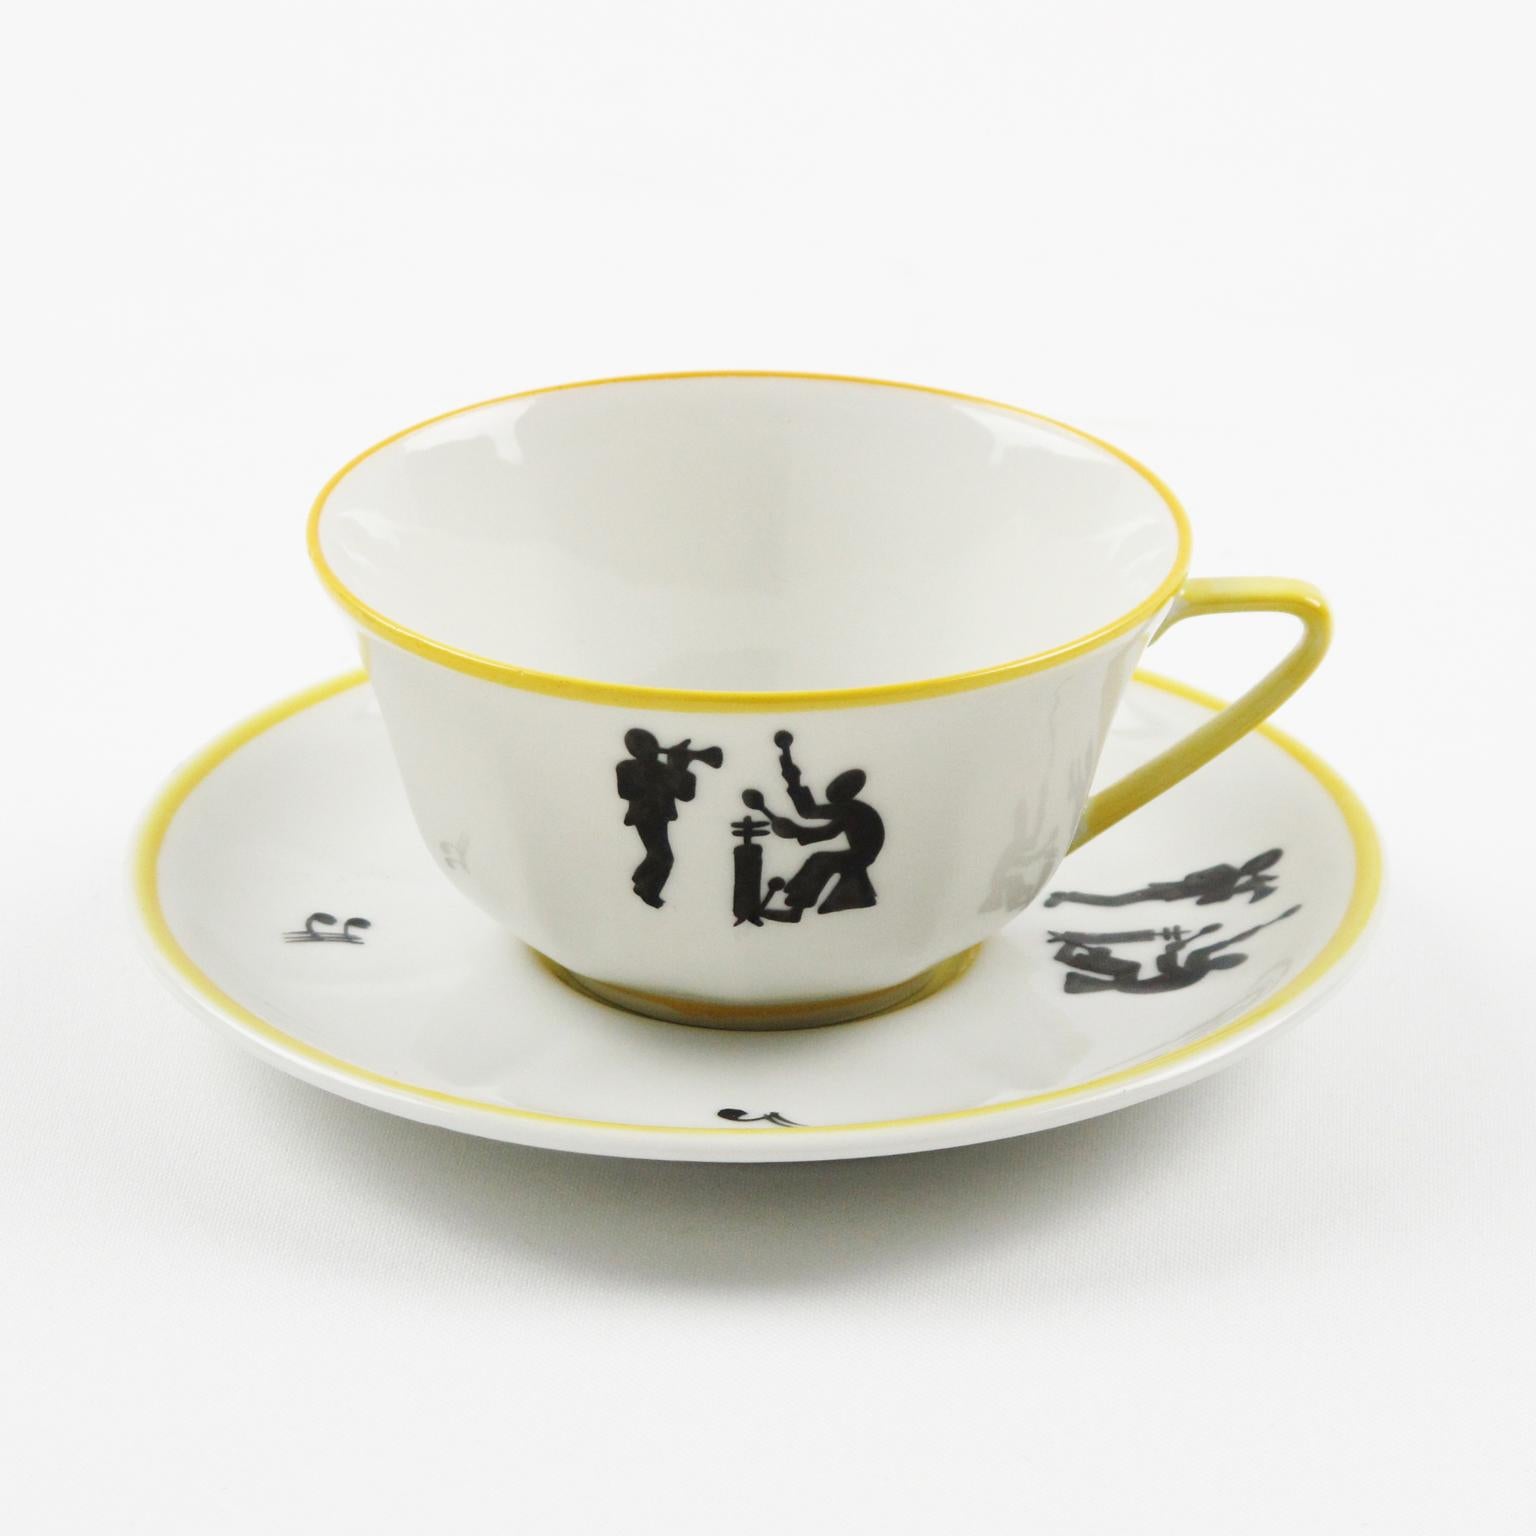 Limoges France Porcelain Tea Coffee Set Jazz Band Design, 1960s 1